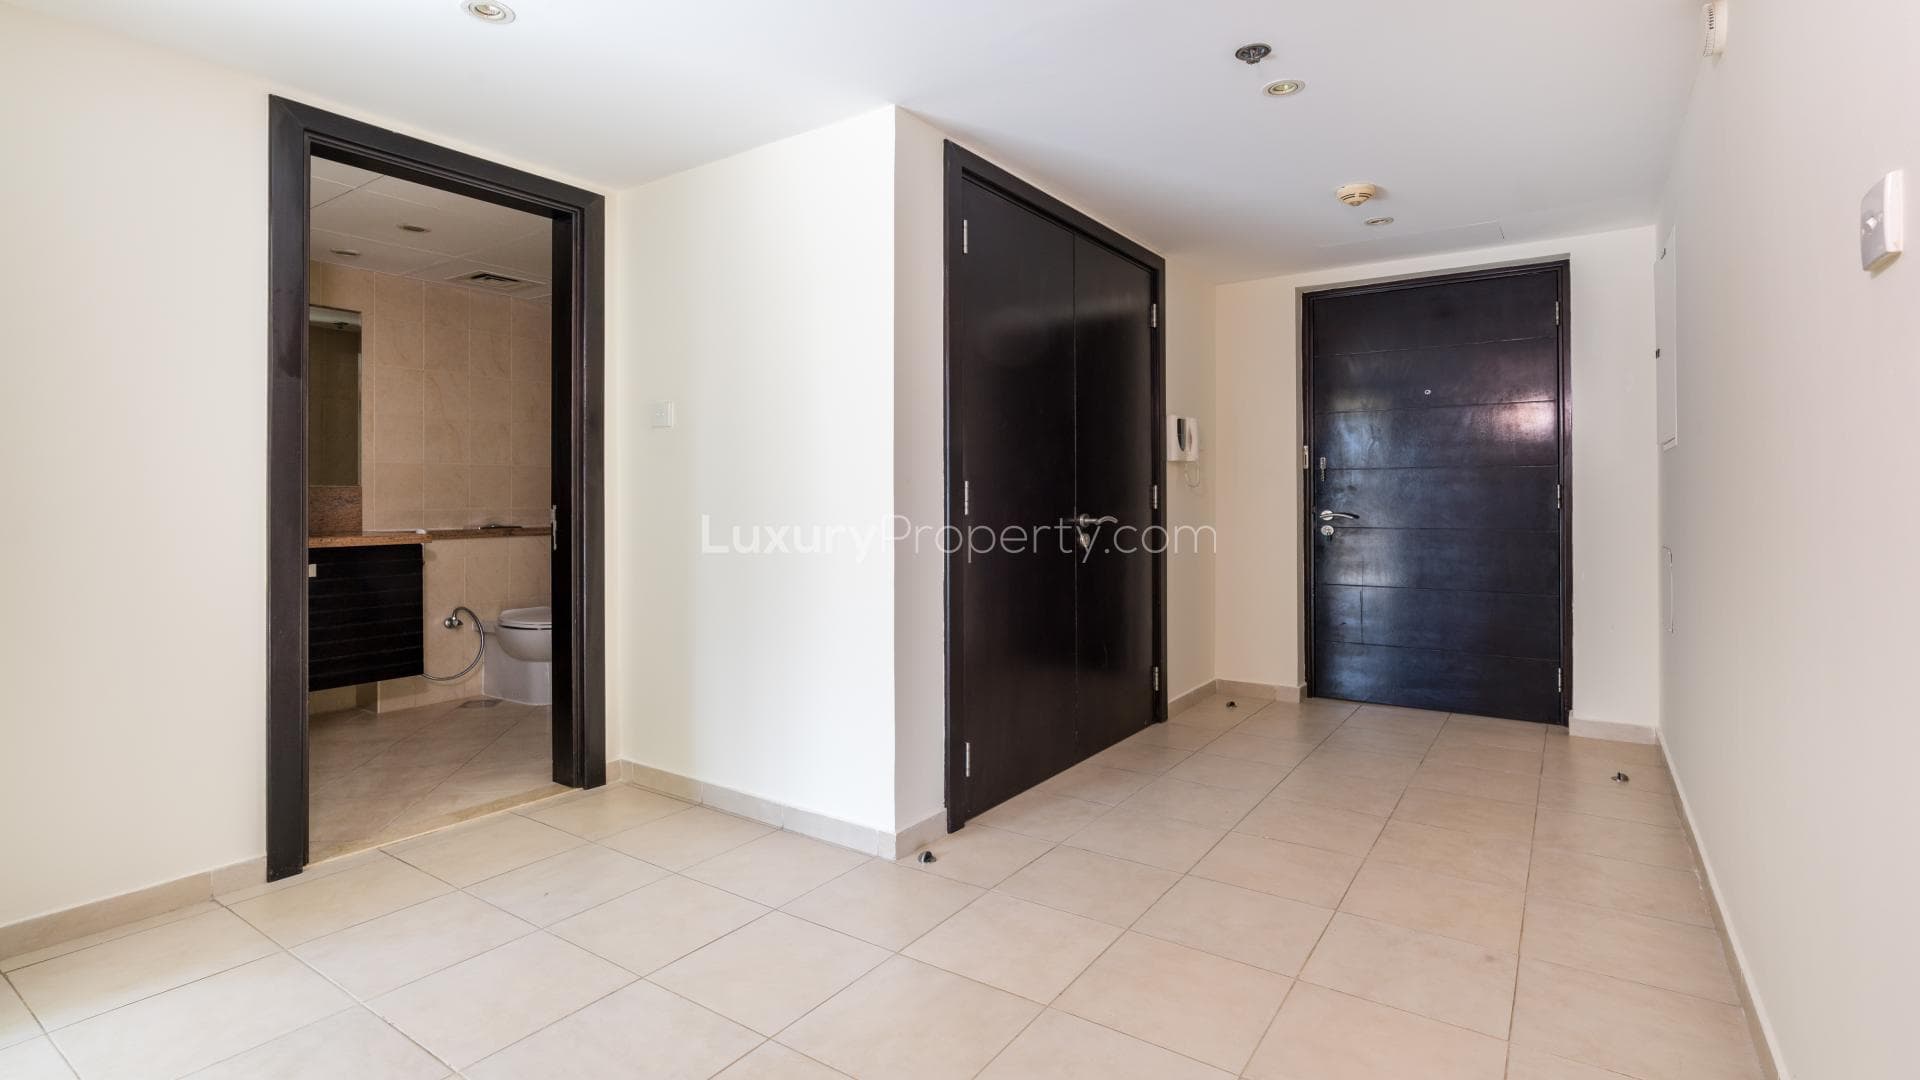 2 Bedroom Apartment For Rent Al Habtoor Tower Lp16576 730b188a5c4bd40.jpg